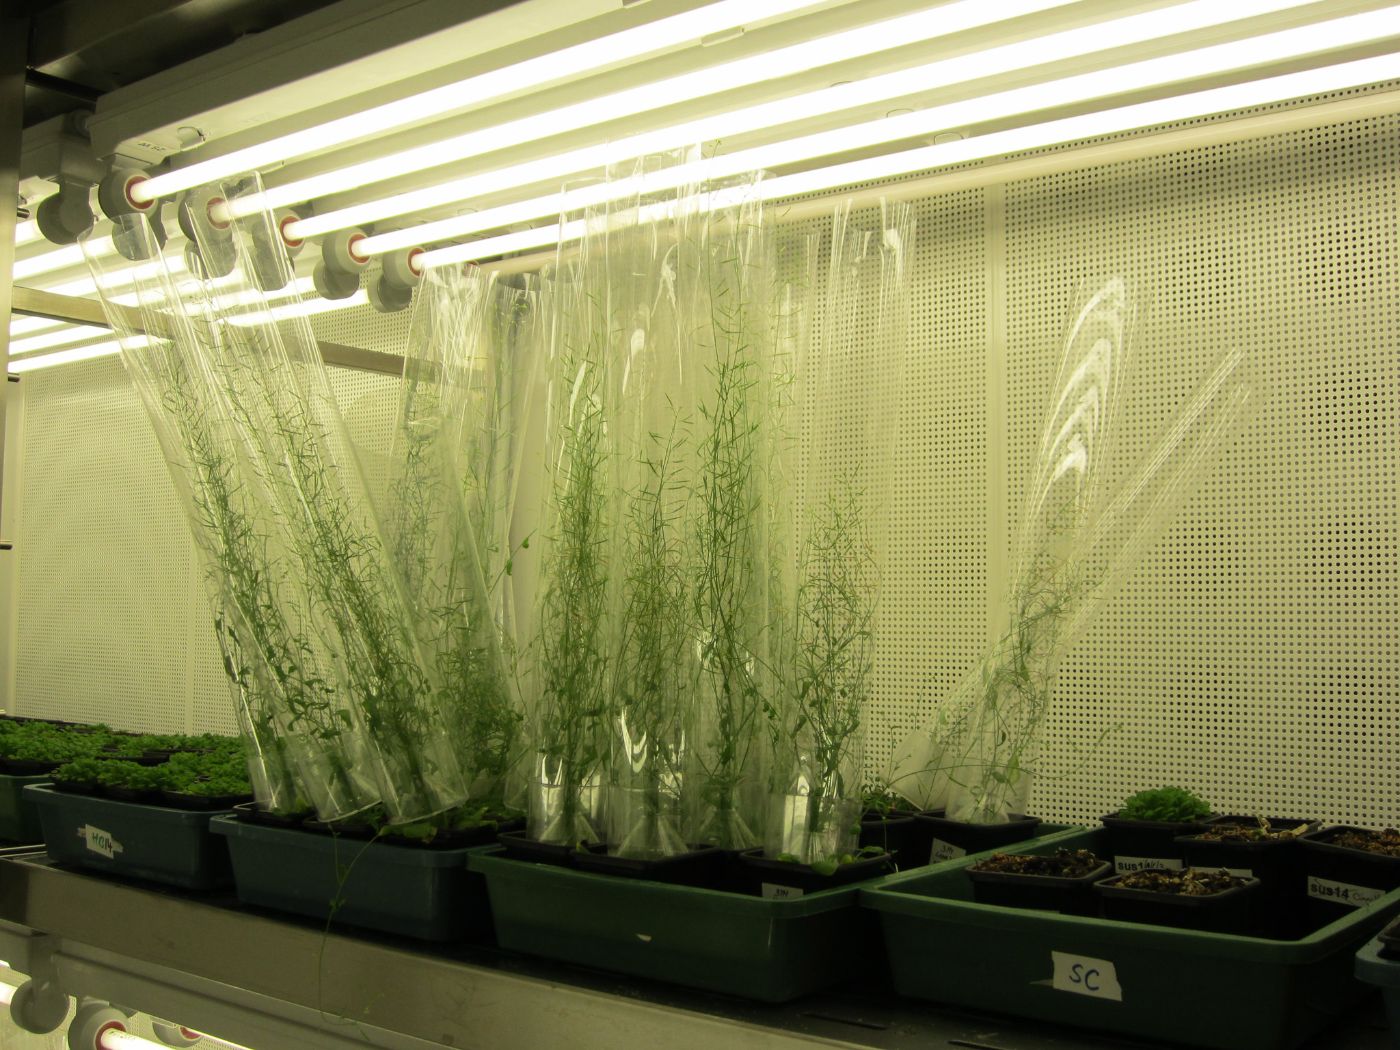 Experimental setup with plants